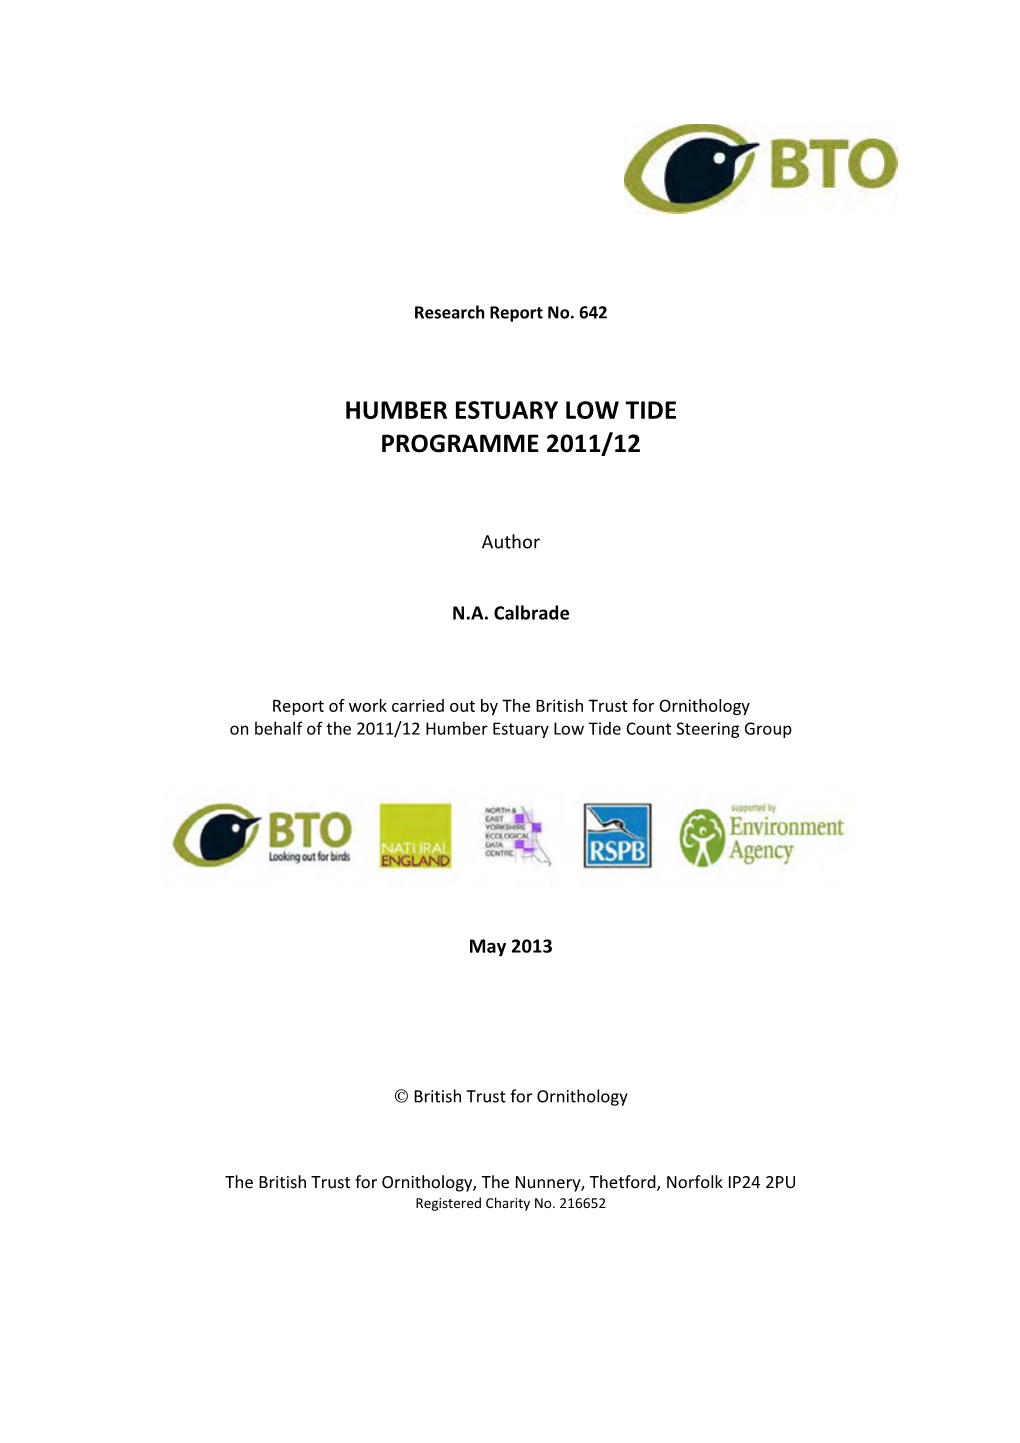 Humber Estuary Low Tide Programme 2011/12